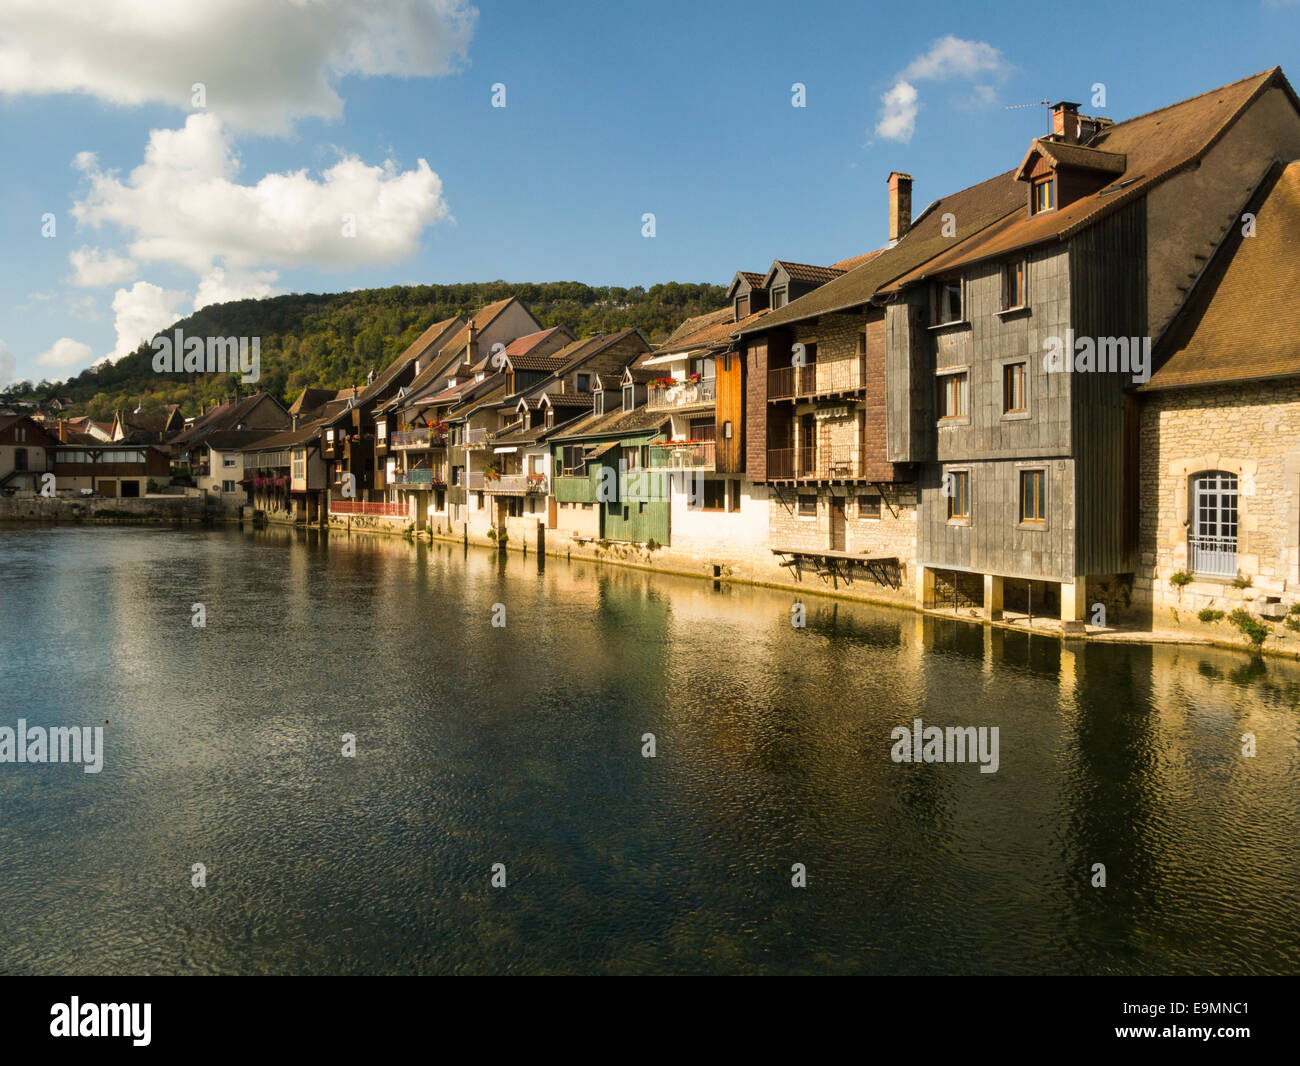 Historischen malerischen Ornans Dorf Doubs Abteilung in Franche-Comté Region im östlichen Frankreich Gebäude mit Blick auf Loue Riv Stockfoto